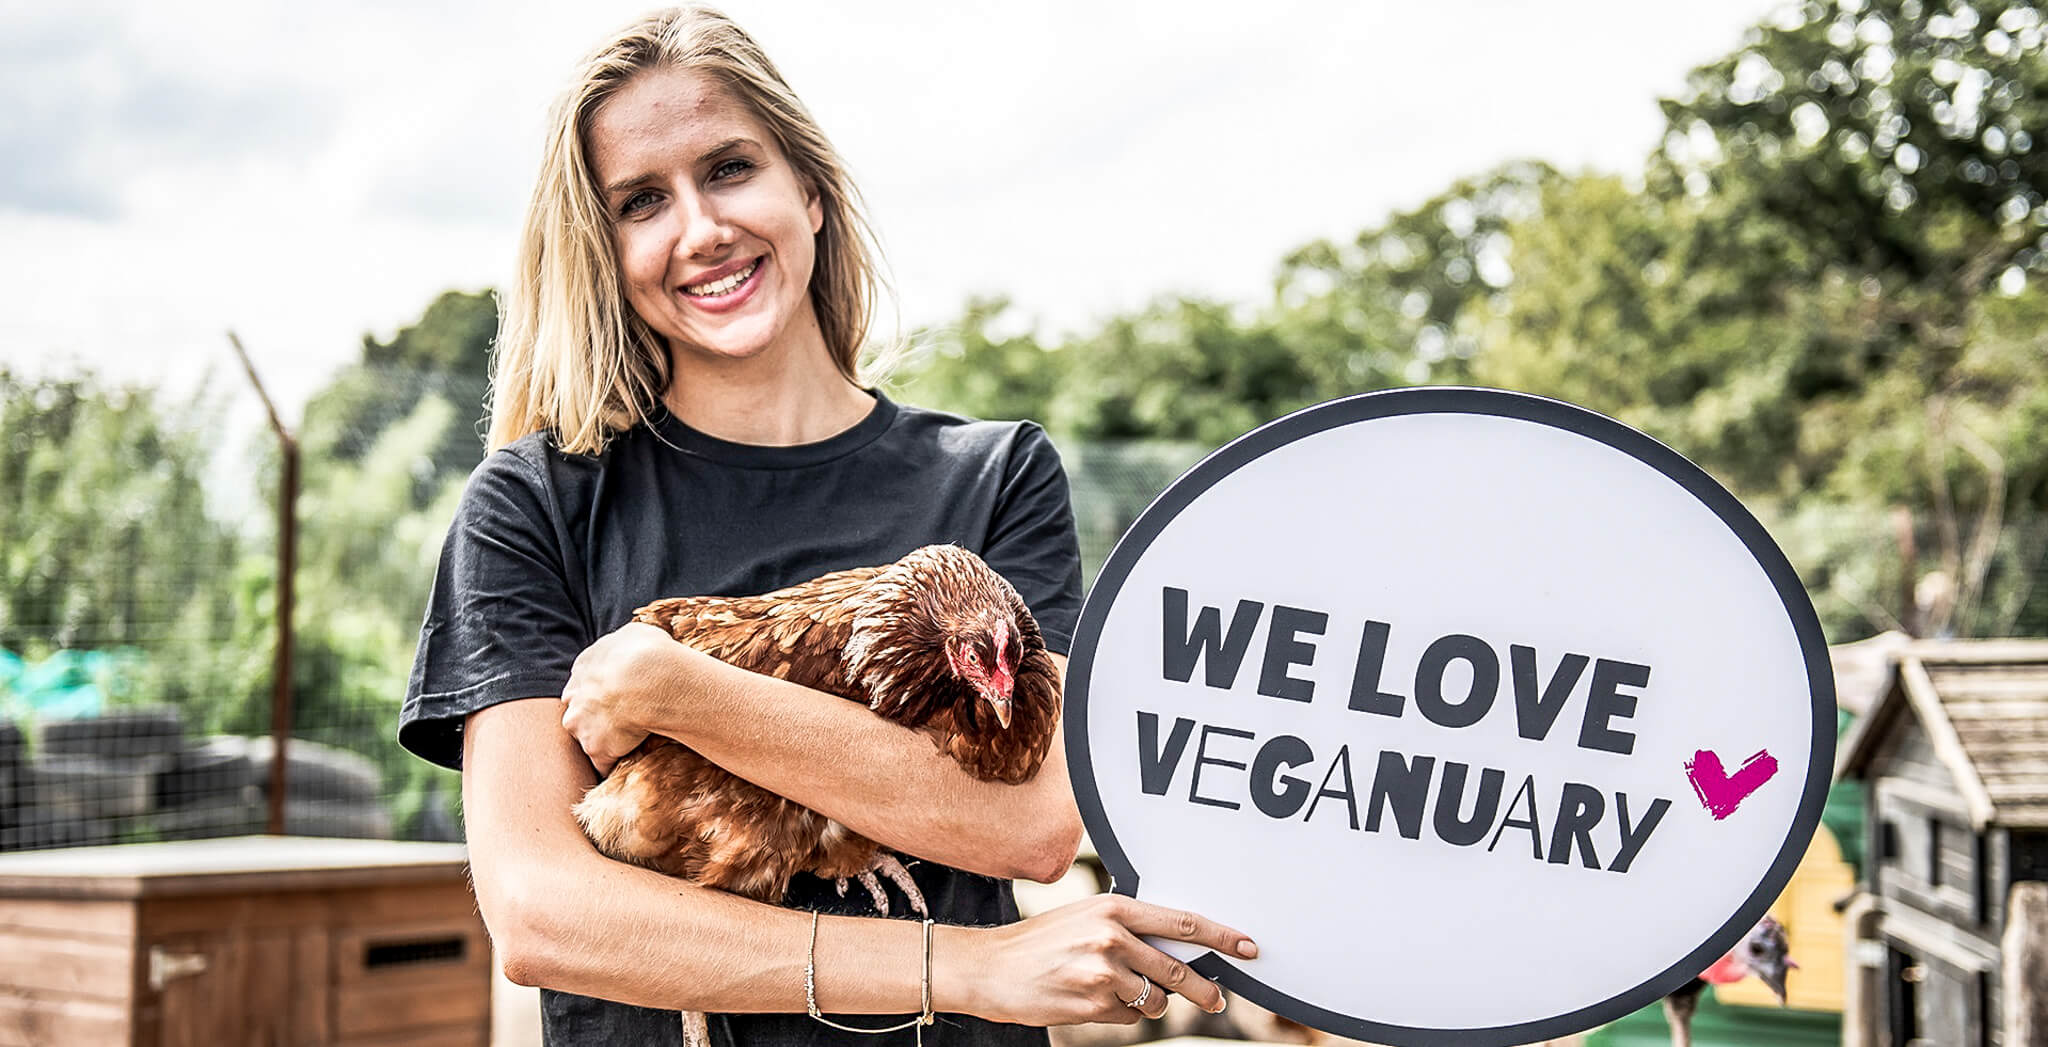 Frau hält Huhn und Schild "We love Veganuary"